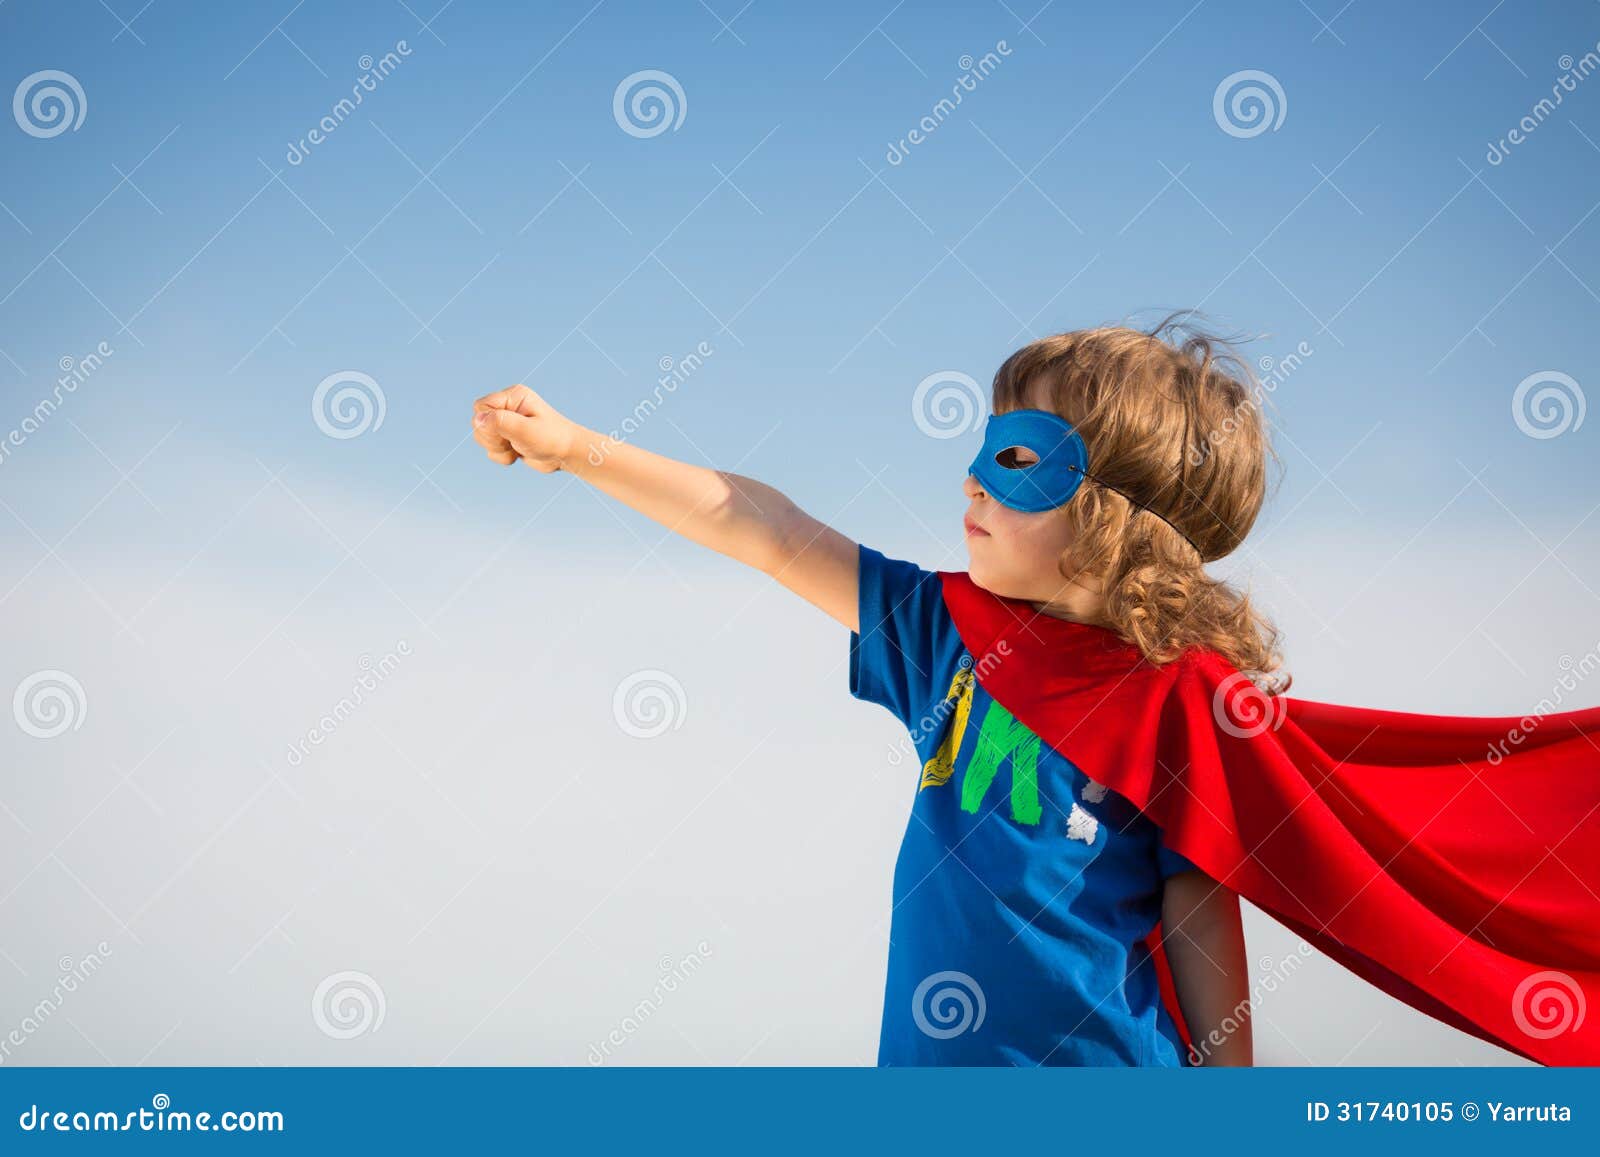 superhero kid